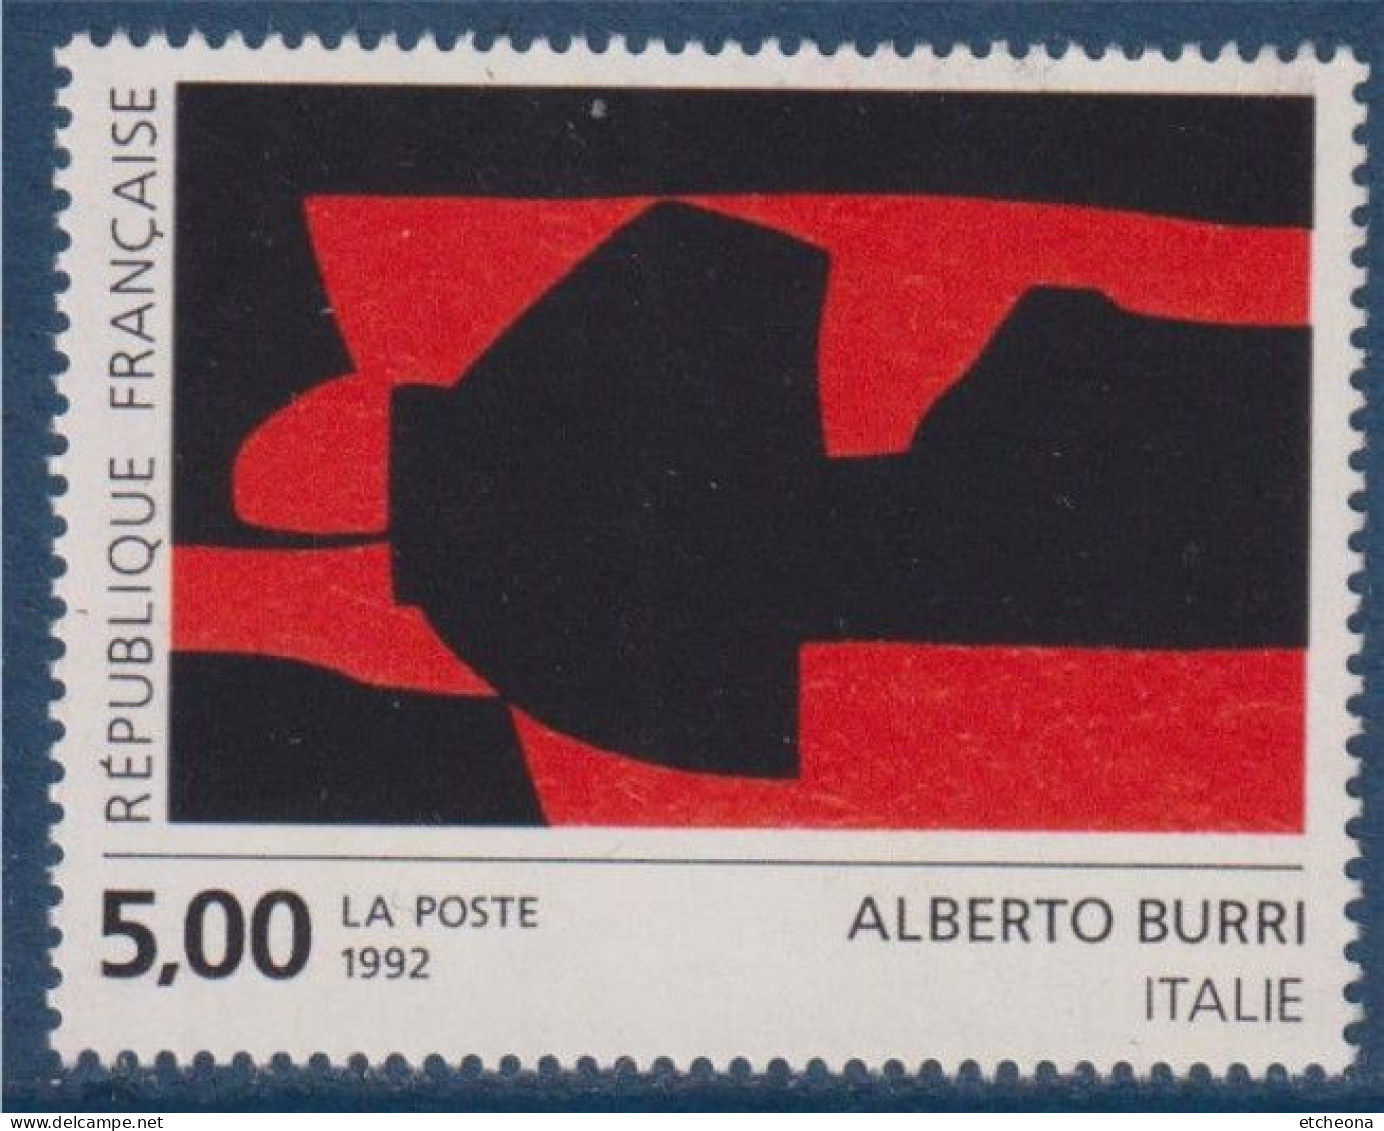 Série Européenne D'art Contemporain "Création Pour La Poste" D'Alberto Burri N°2780 Neuf Italie - Nuevos